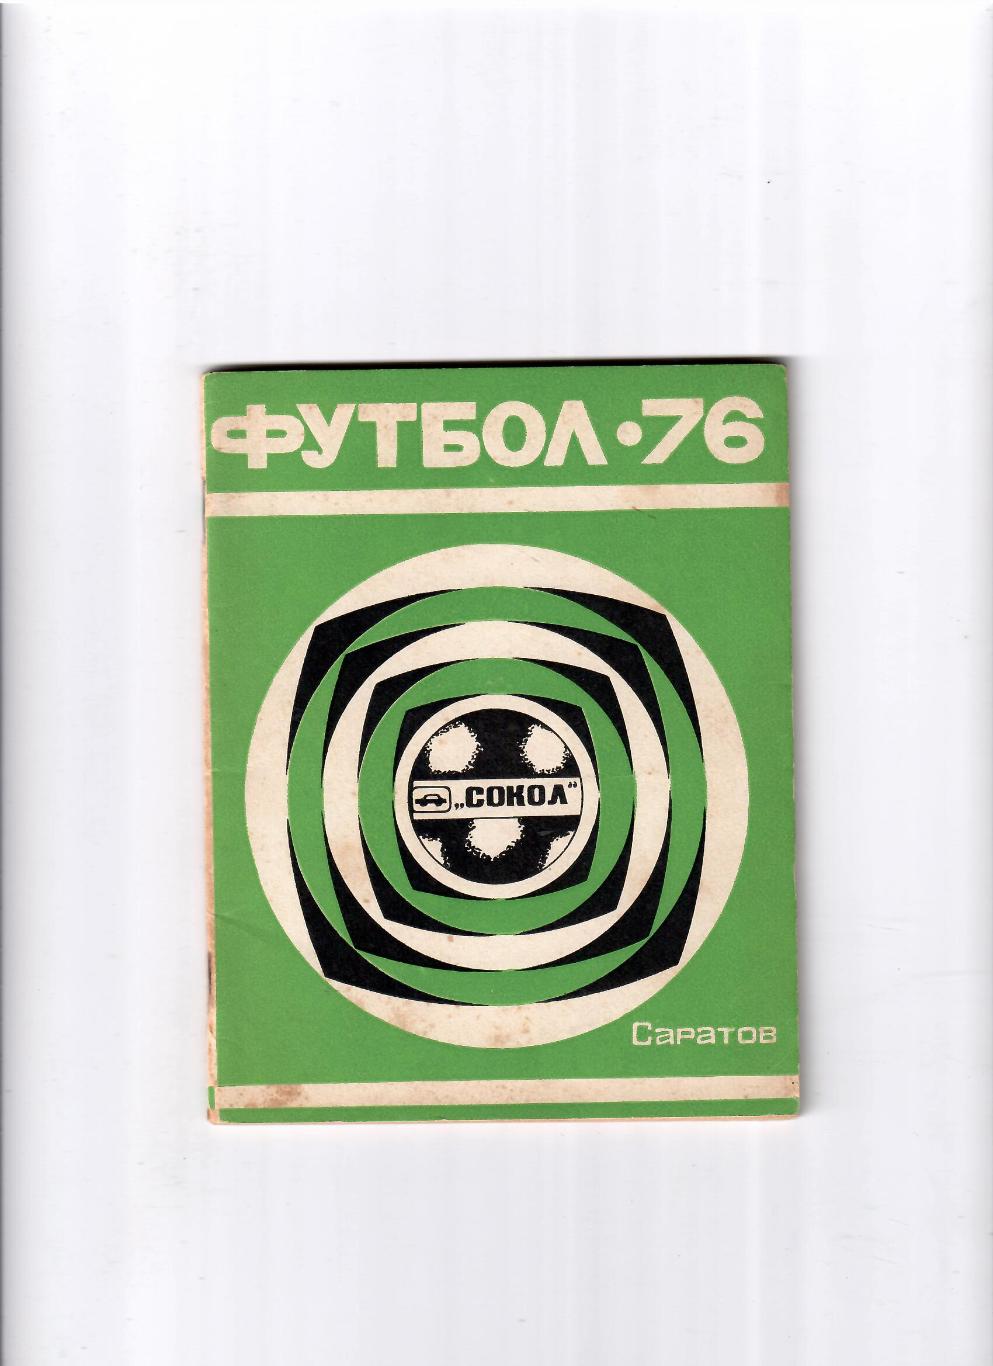 К/С Саратов 1976